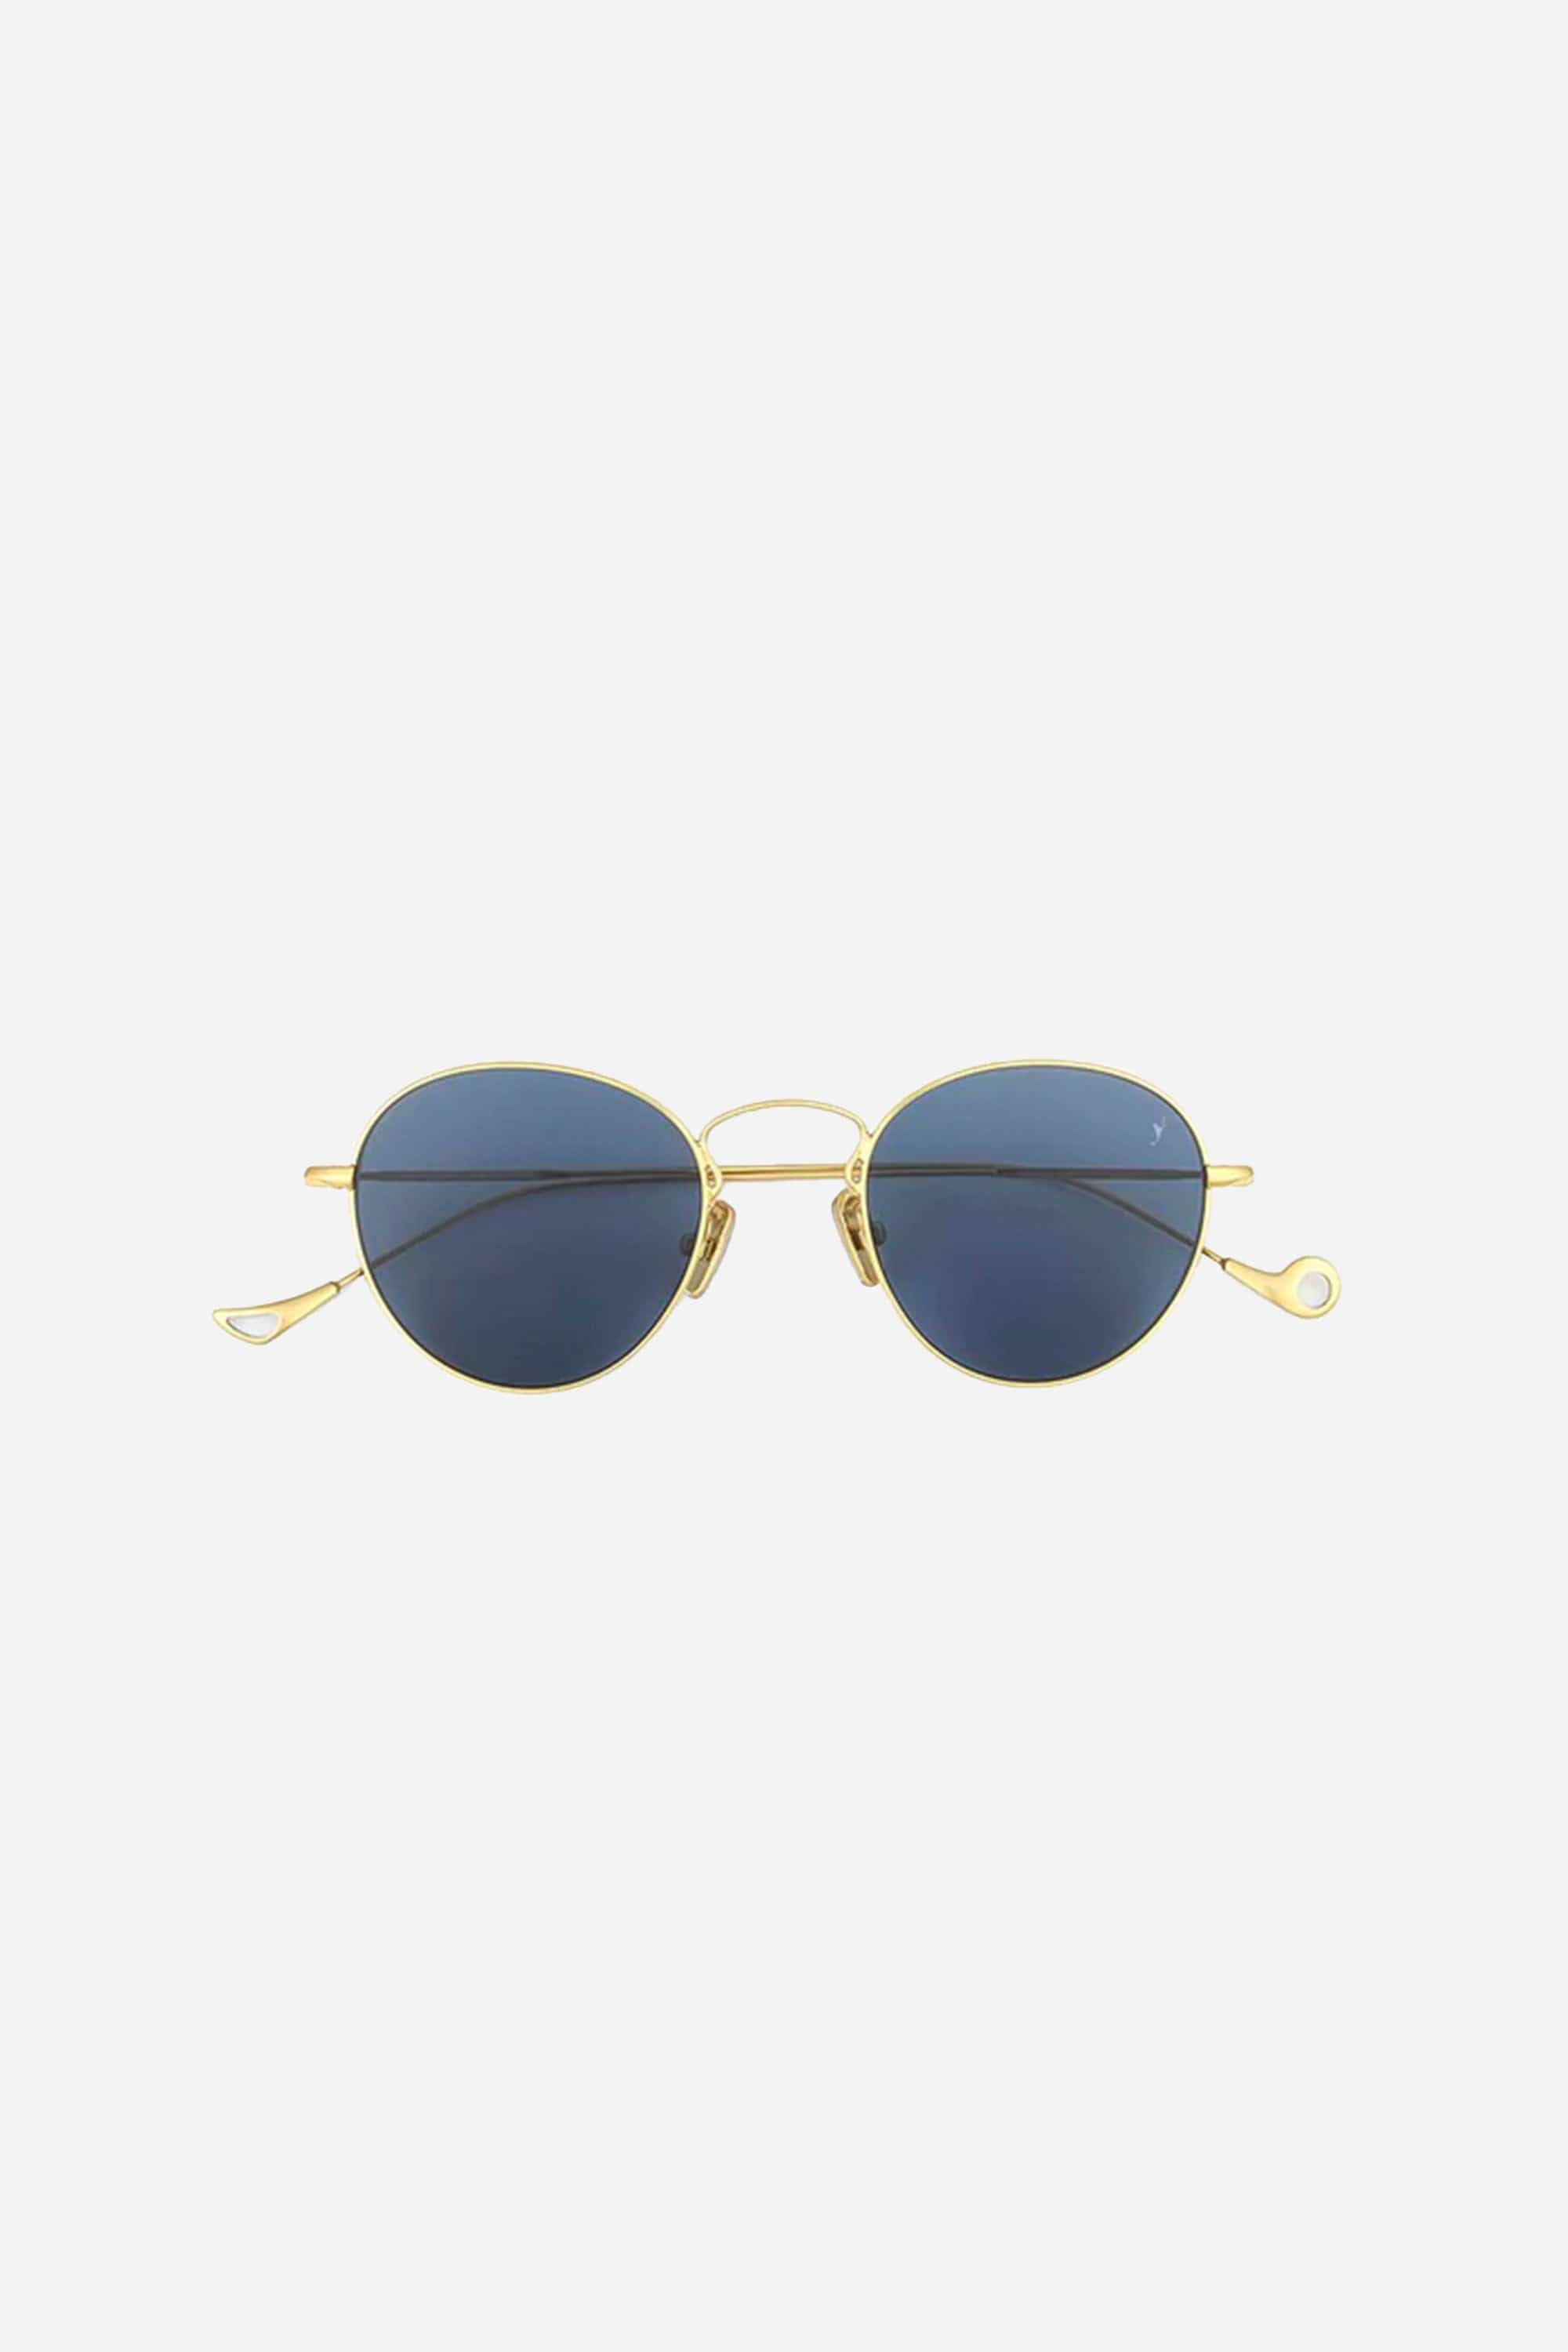 Eyepetizer metal round Julien sunglasses - Eyewear Club